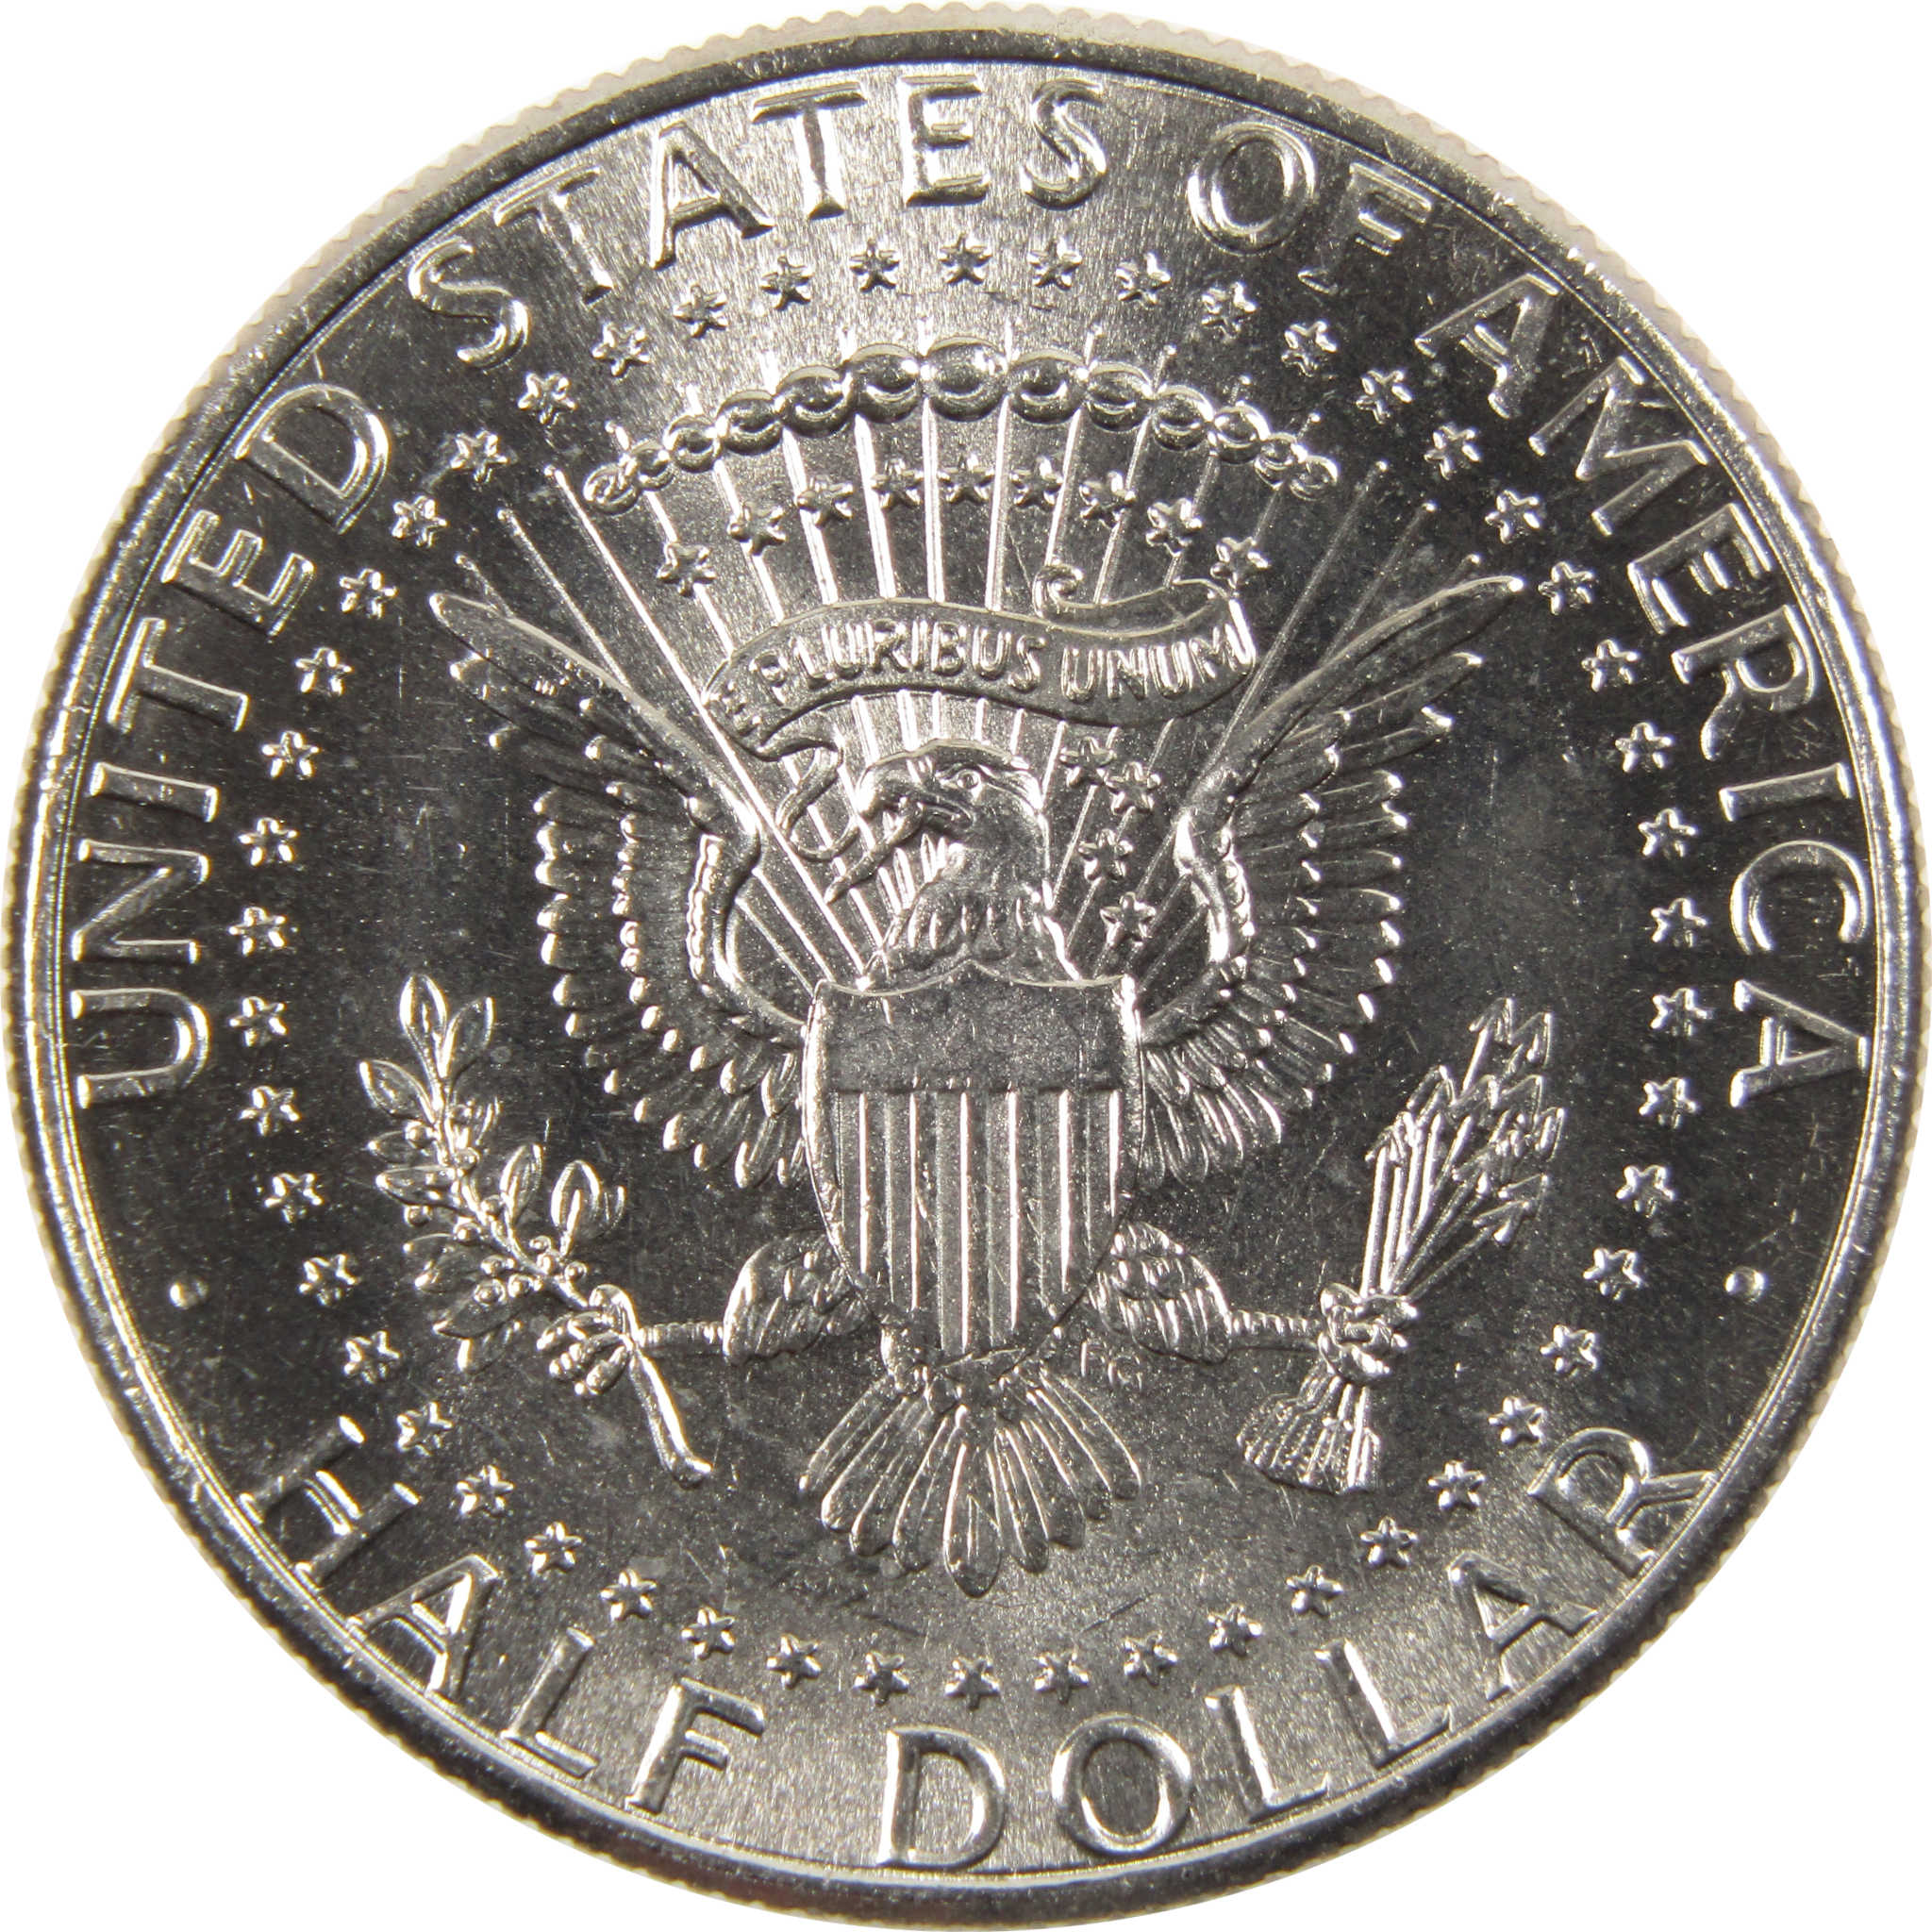 2019 D Kennedy Half Dollar BU Uncirculated Clad 50c Coin